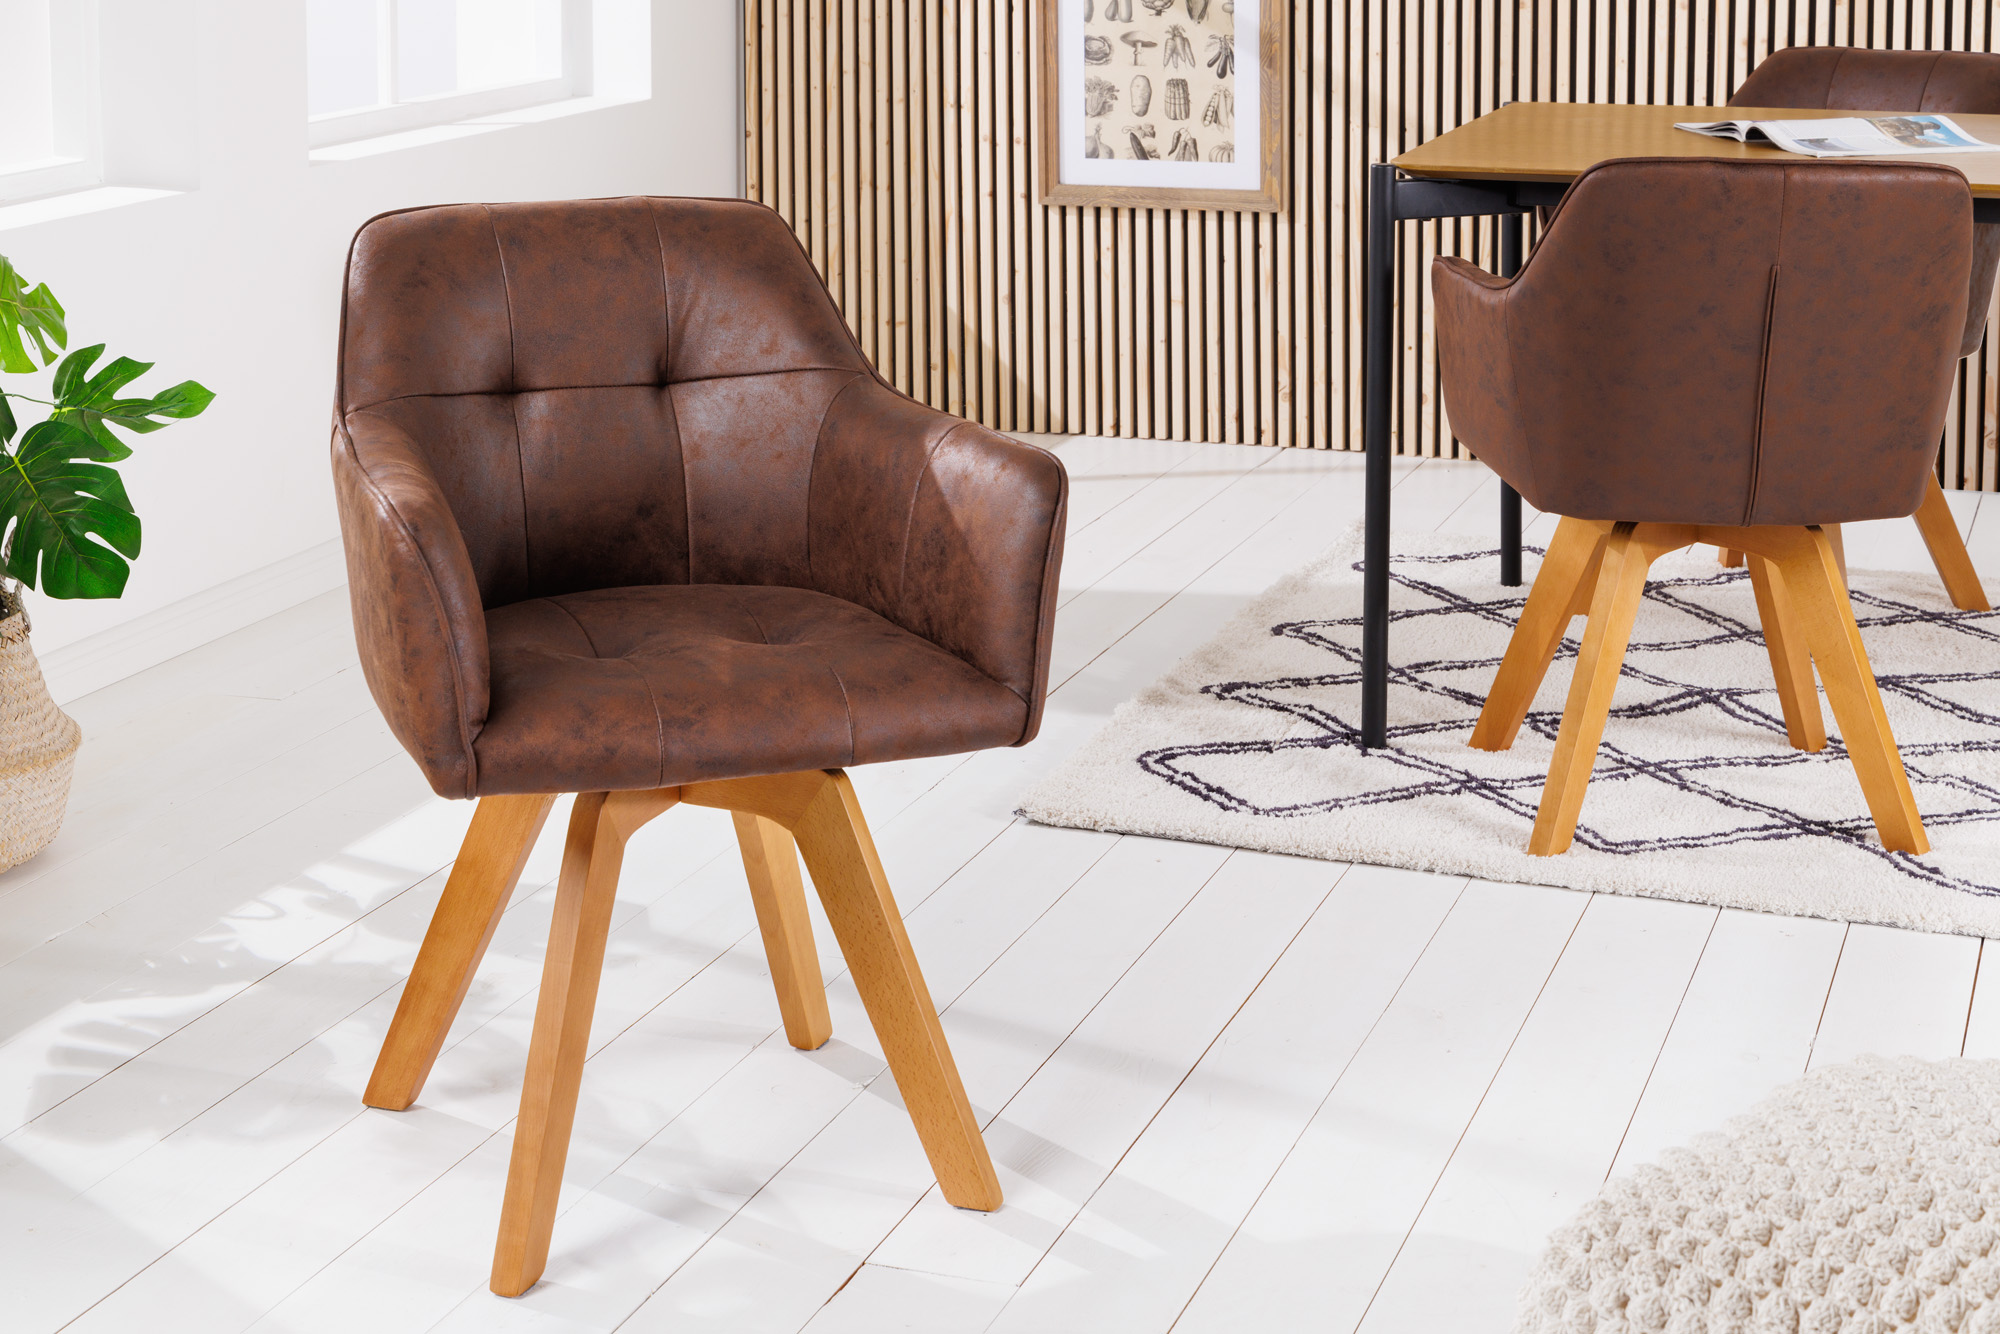 LuxD Designová otočná židle Galileo antik hnědá